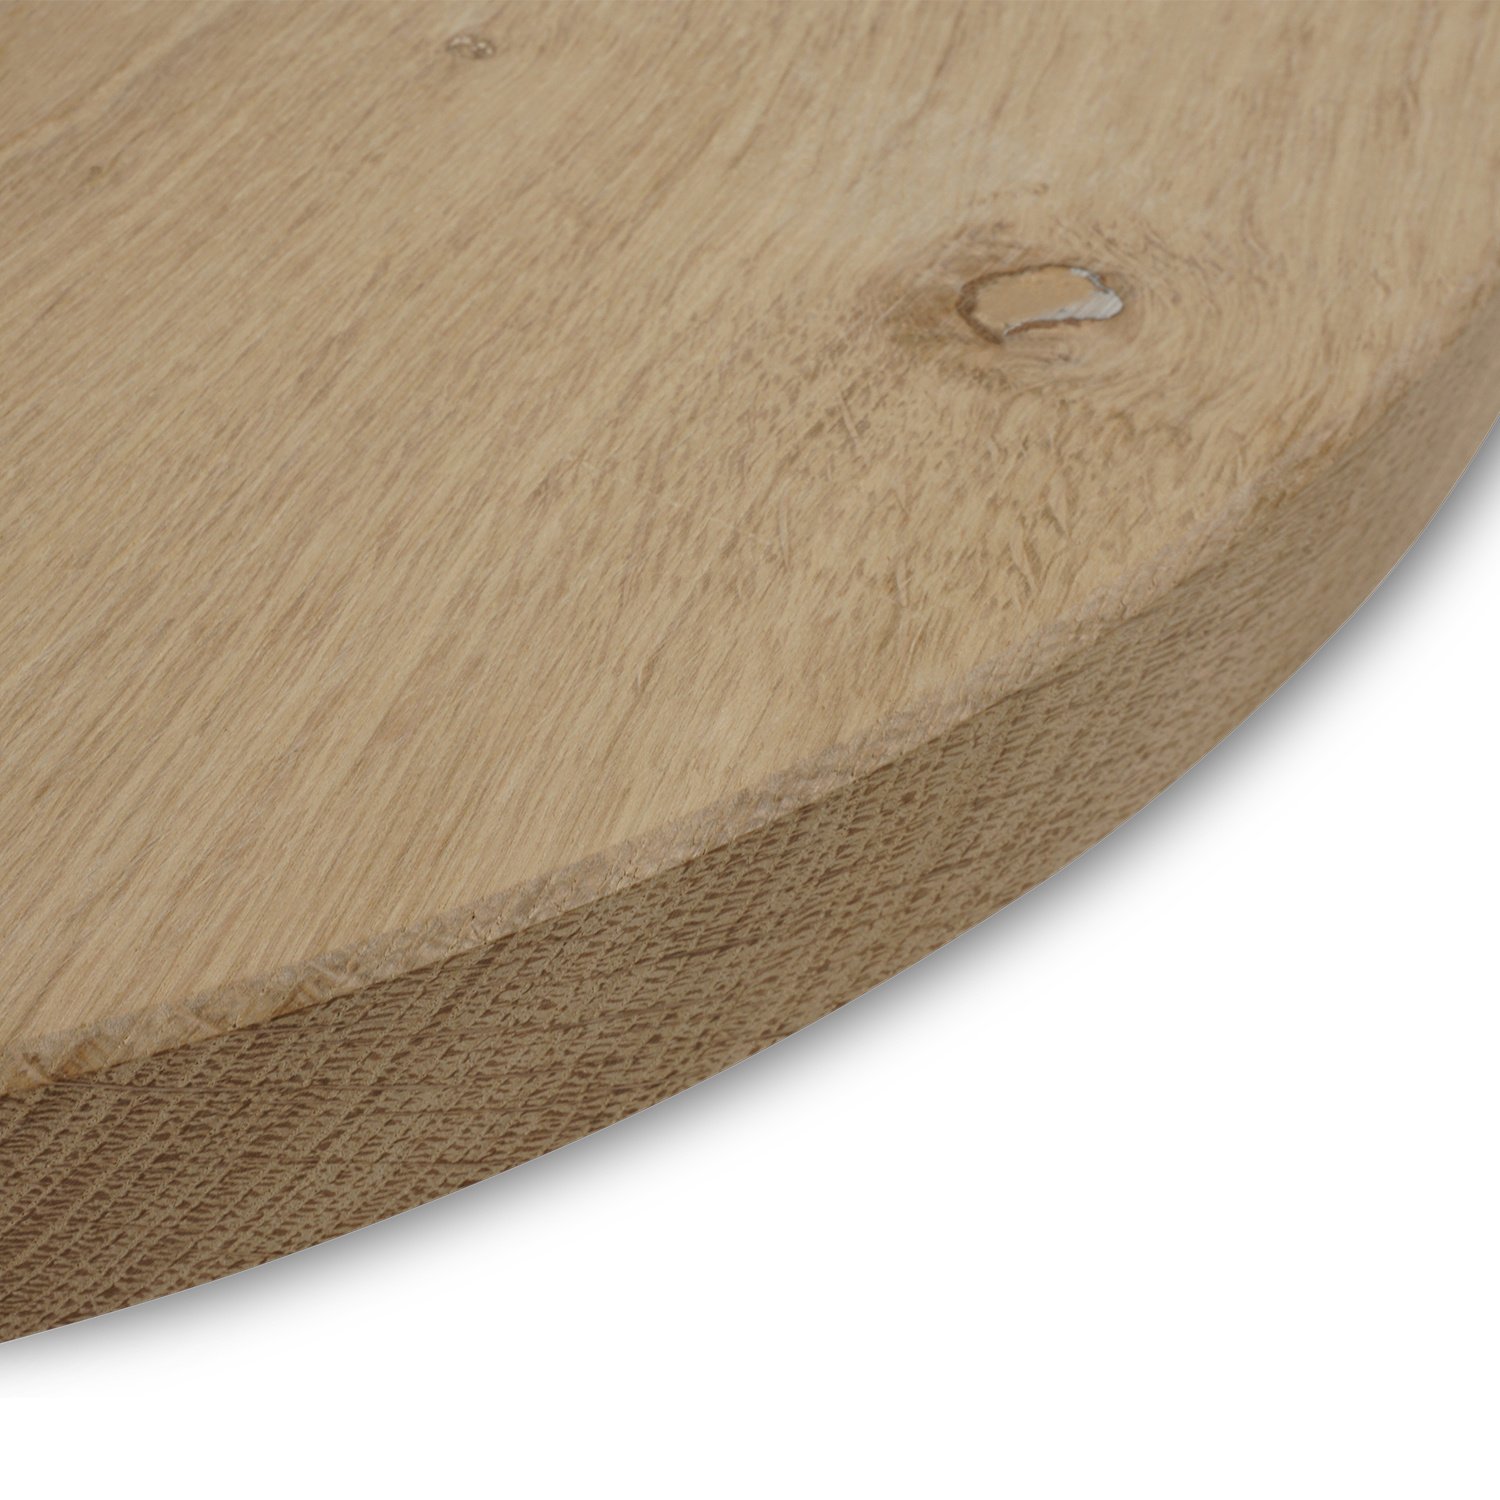  Tischplatte Eiche rund nach Maß - 4 cm dick - Eichenholz rustikal - Durchmesser: 30 - 180 cm - Eiche Tischplatte rund massiv - verleimt & künstlich getrocknet (HF 8-12%)